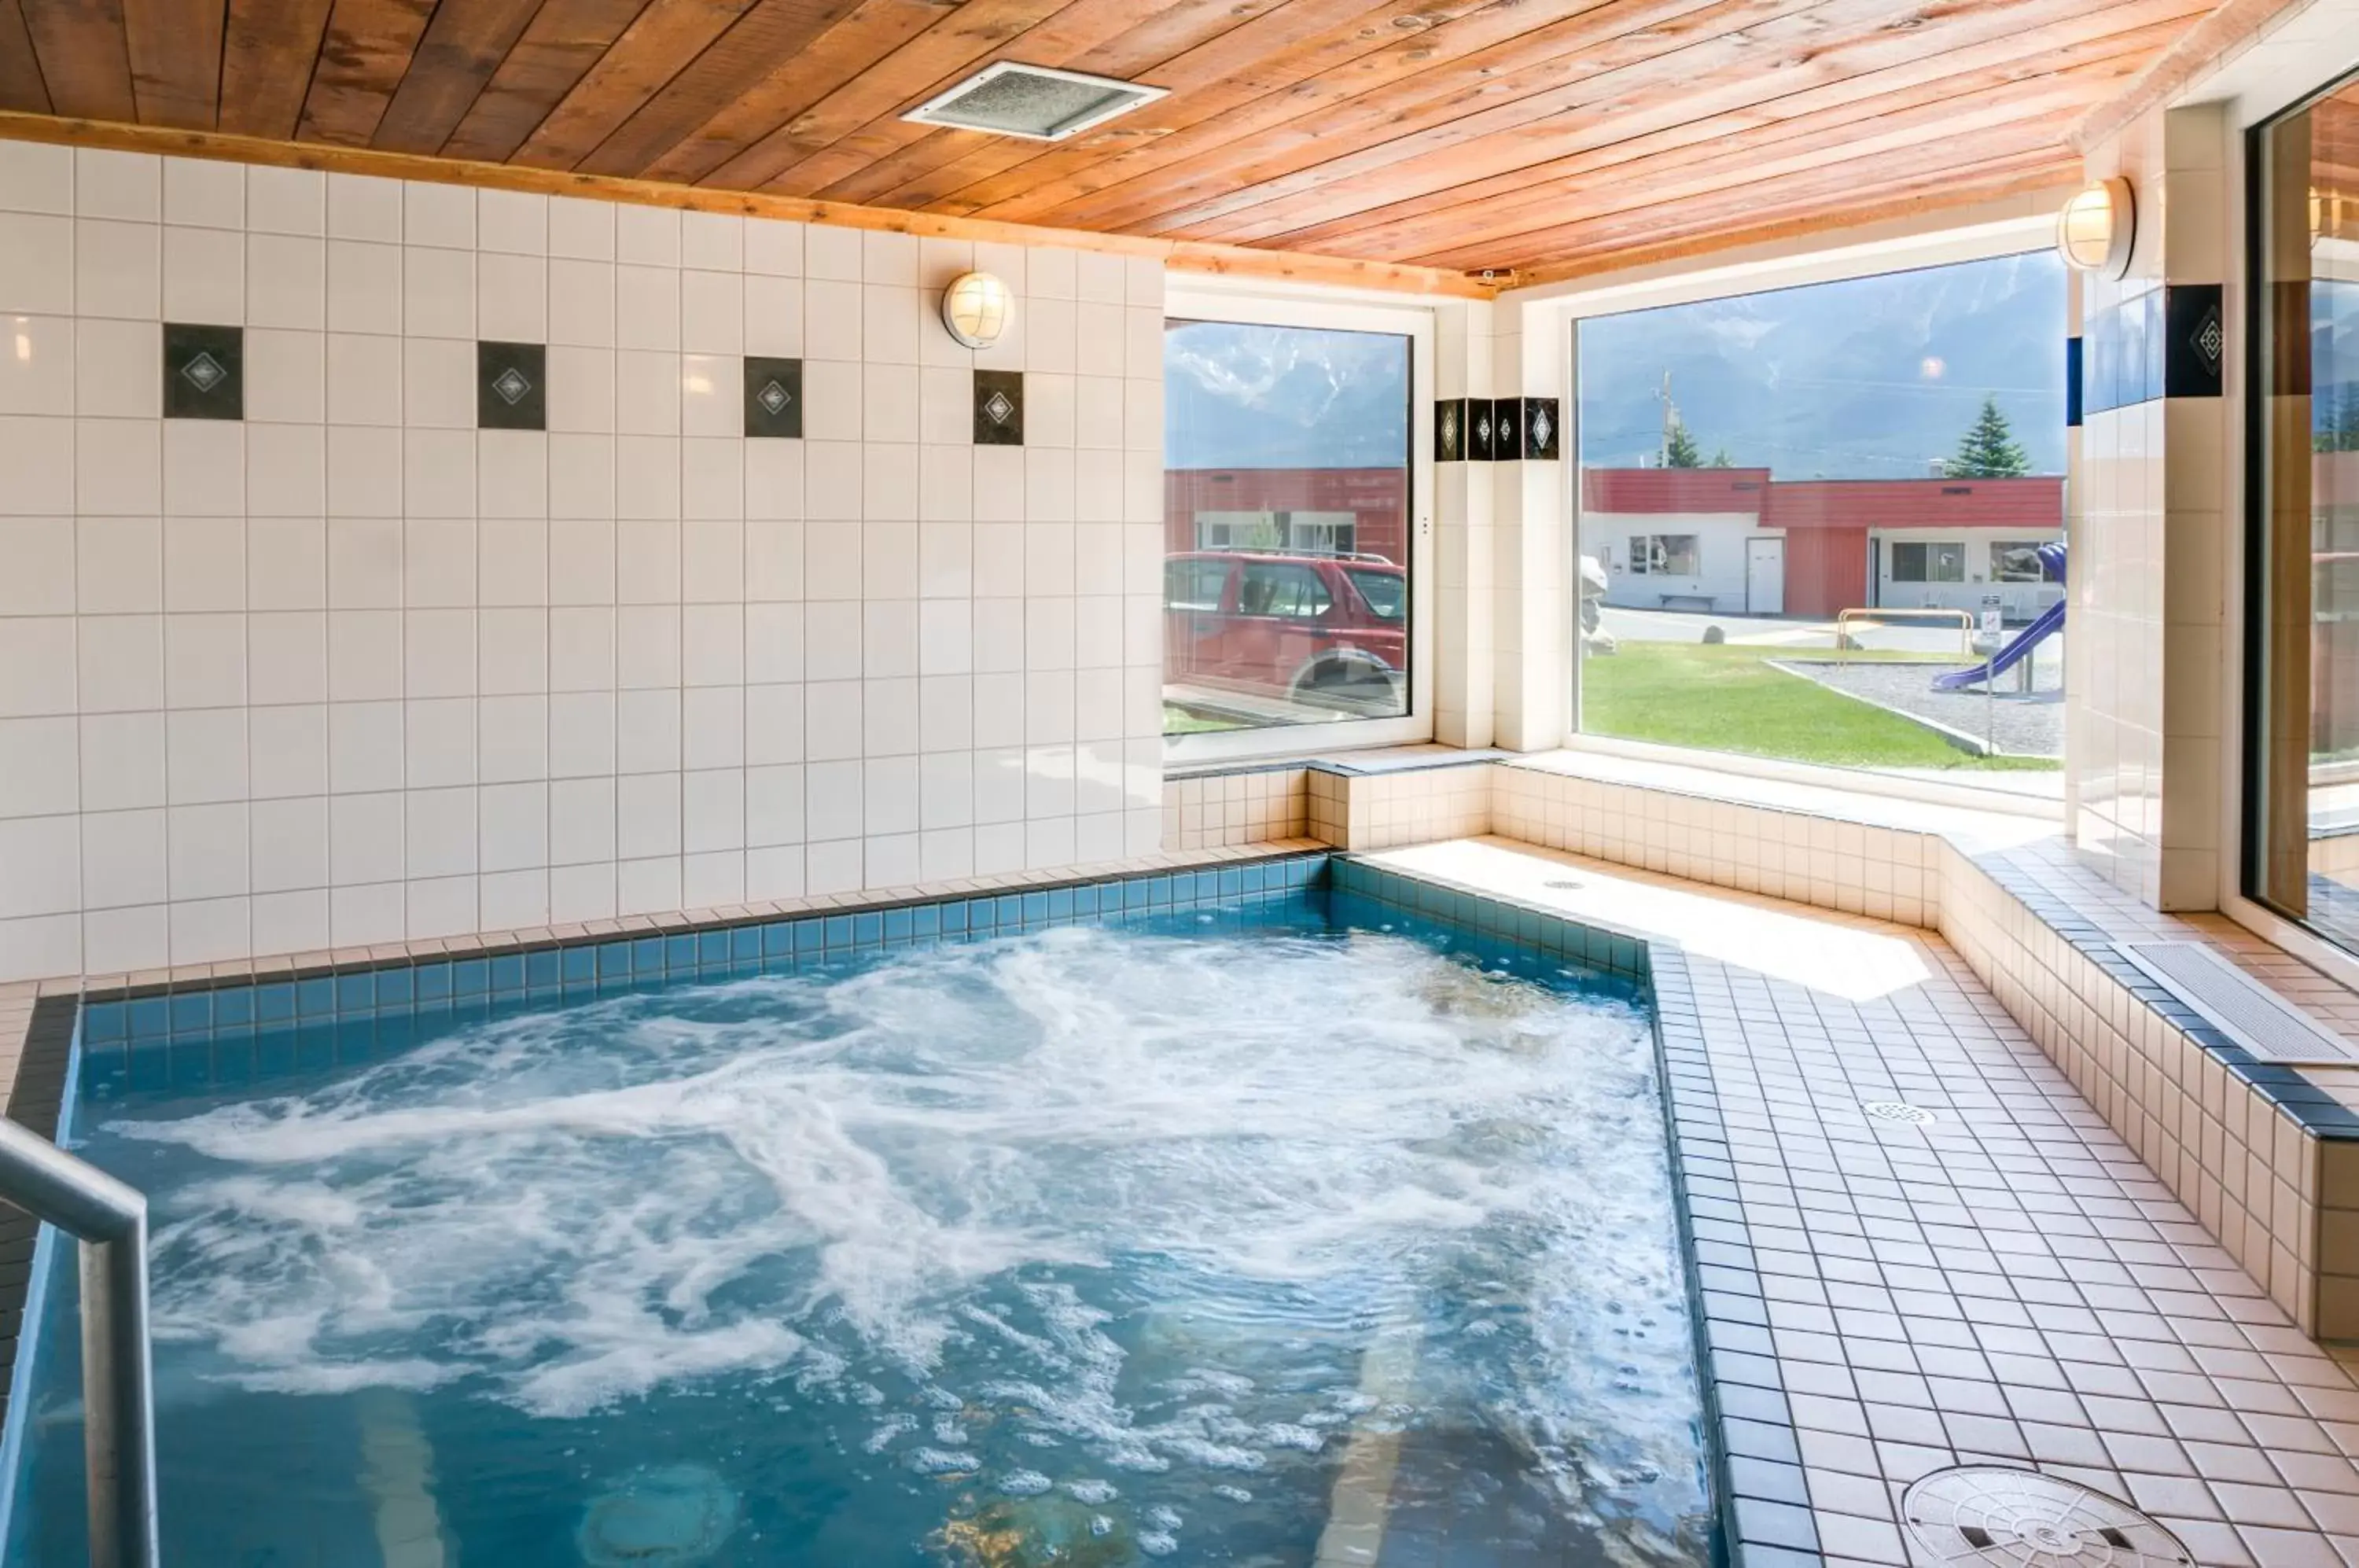 Hot Tub, Swimming Pool in Rocky Mountain Ski Lodge